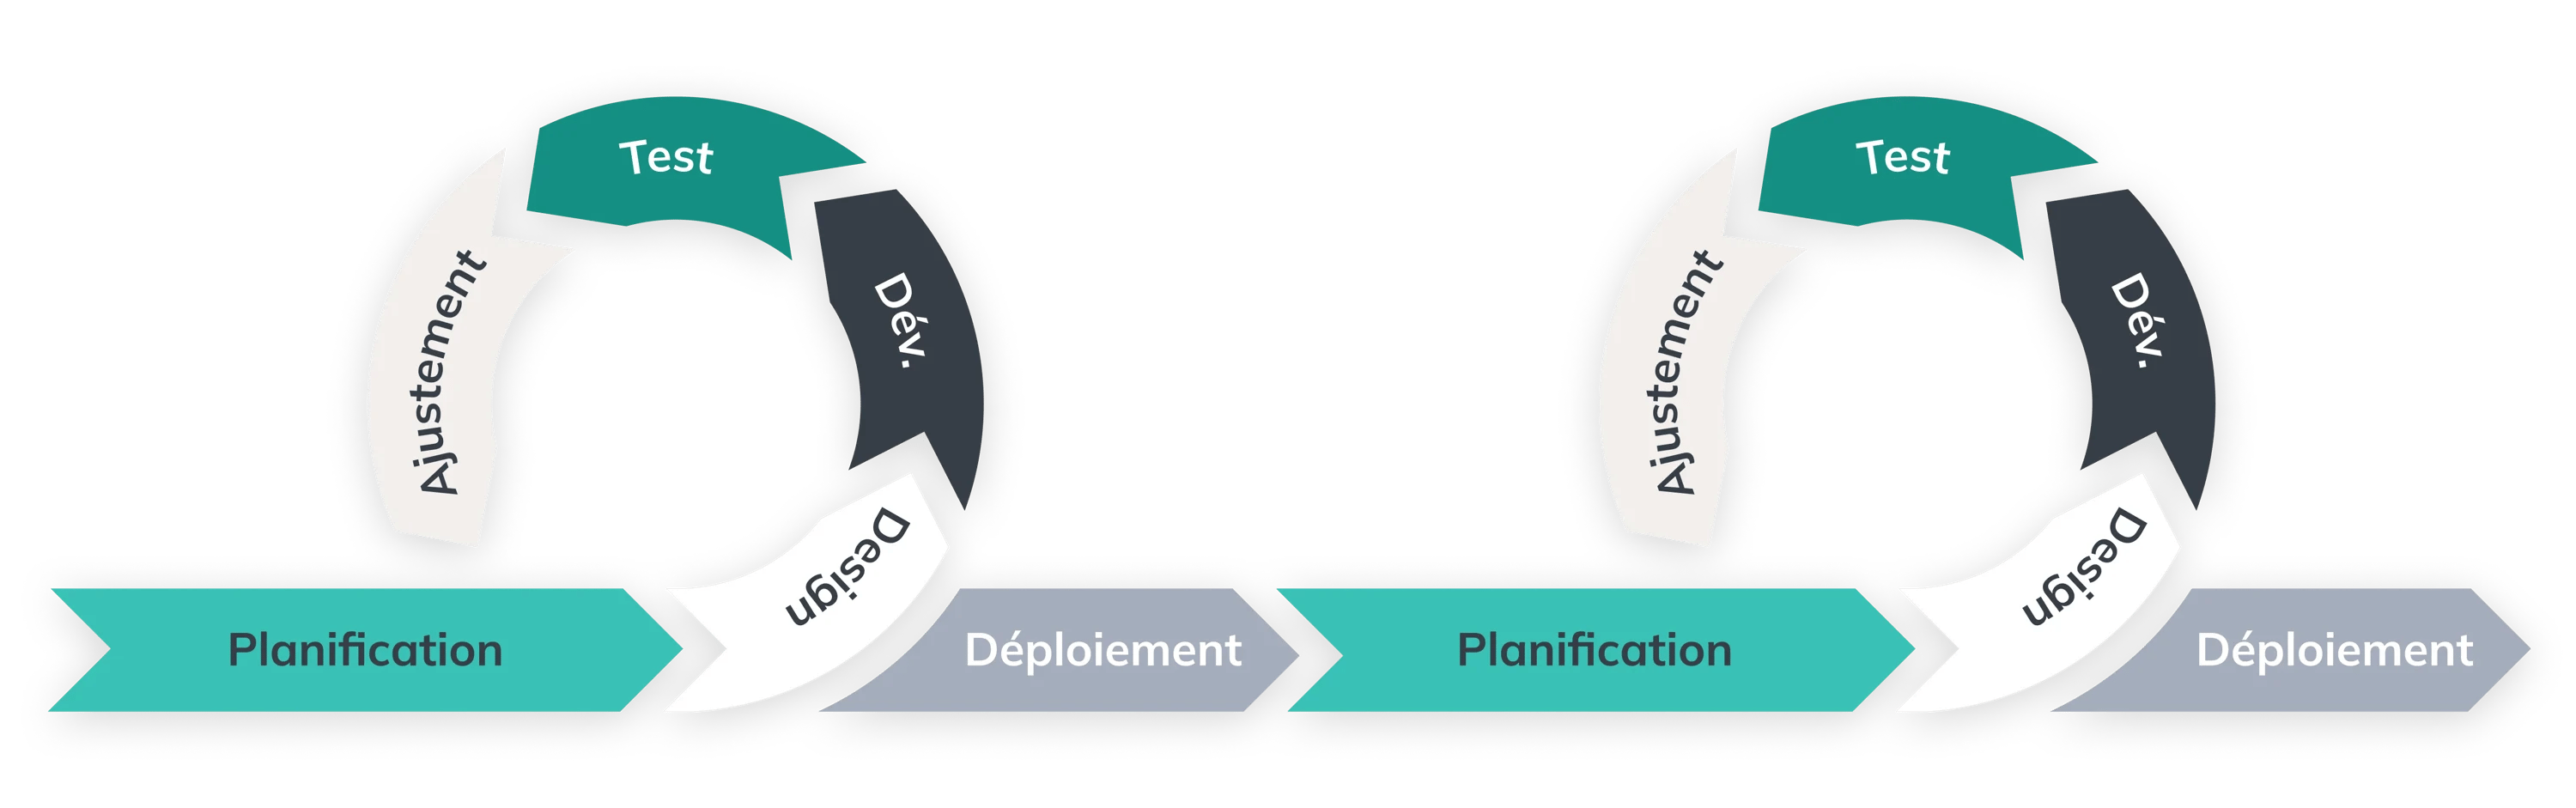 méthodologie de développement logiciel chez nexapp combinant Agile, DevOps et Lean pour une découverte et une livraison en continu